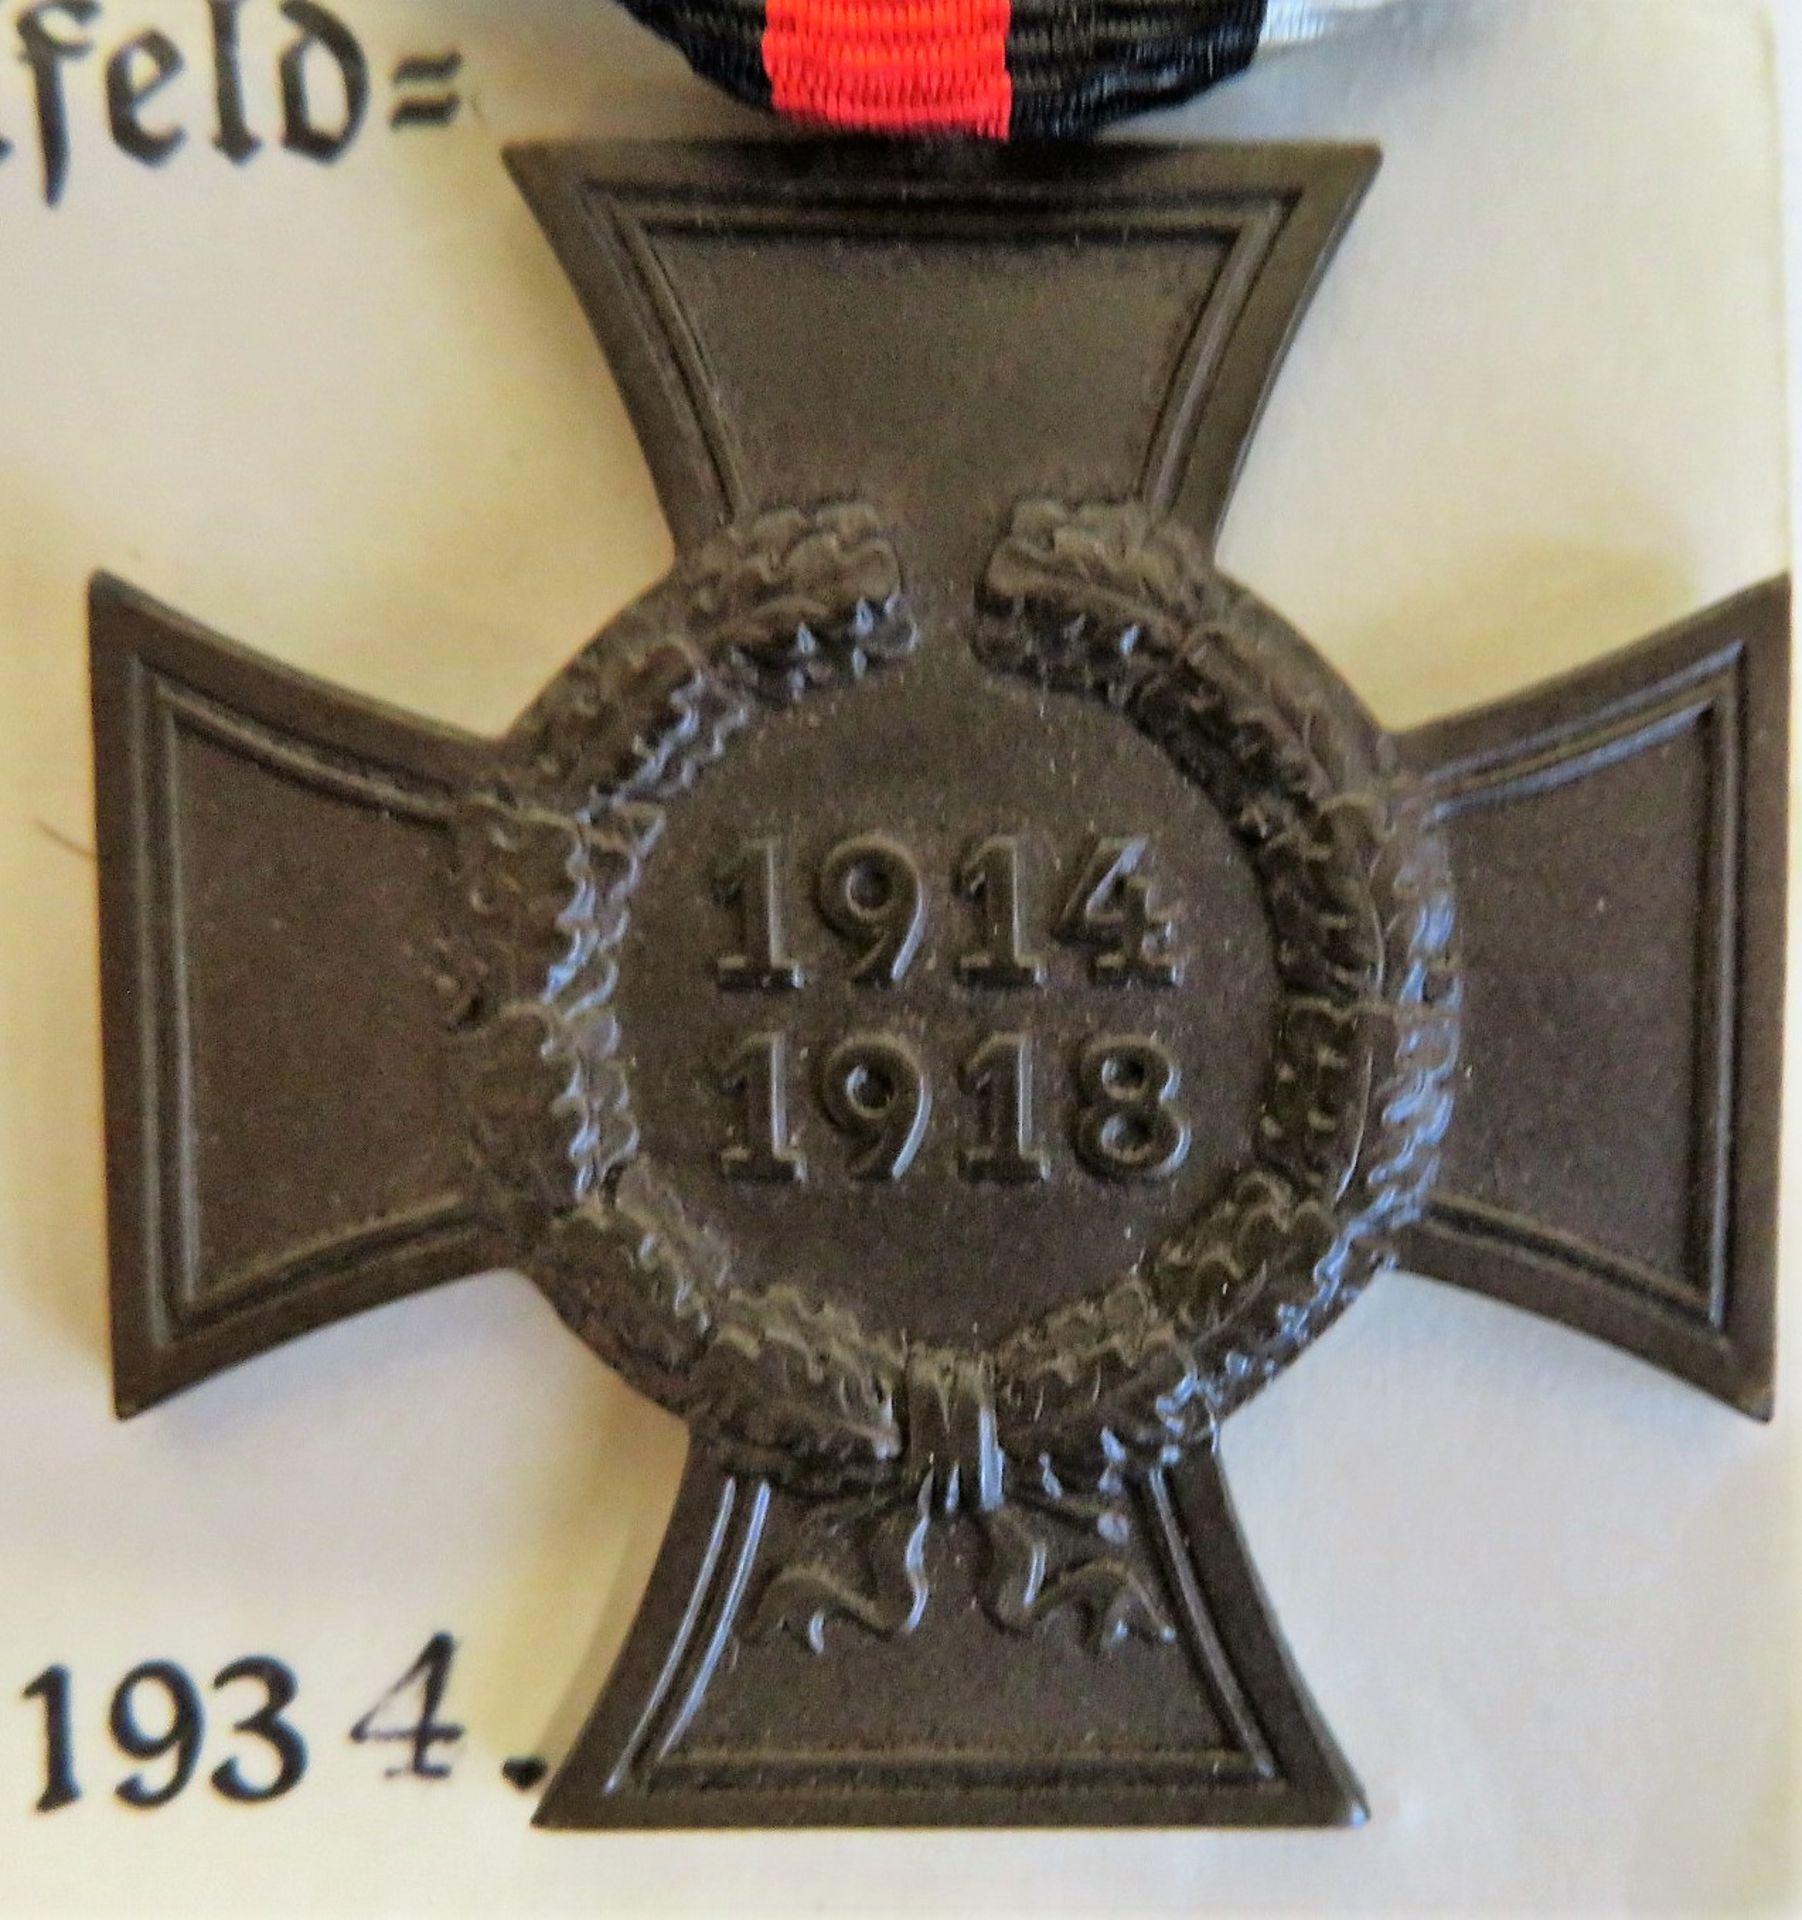 Ehrenkreuz für Kriegsteilnehmer, 1914 - 1918, mit Verleihungsurkunde, 1934. - Bild 2 aus 3